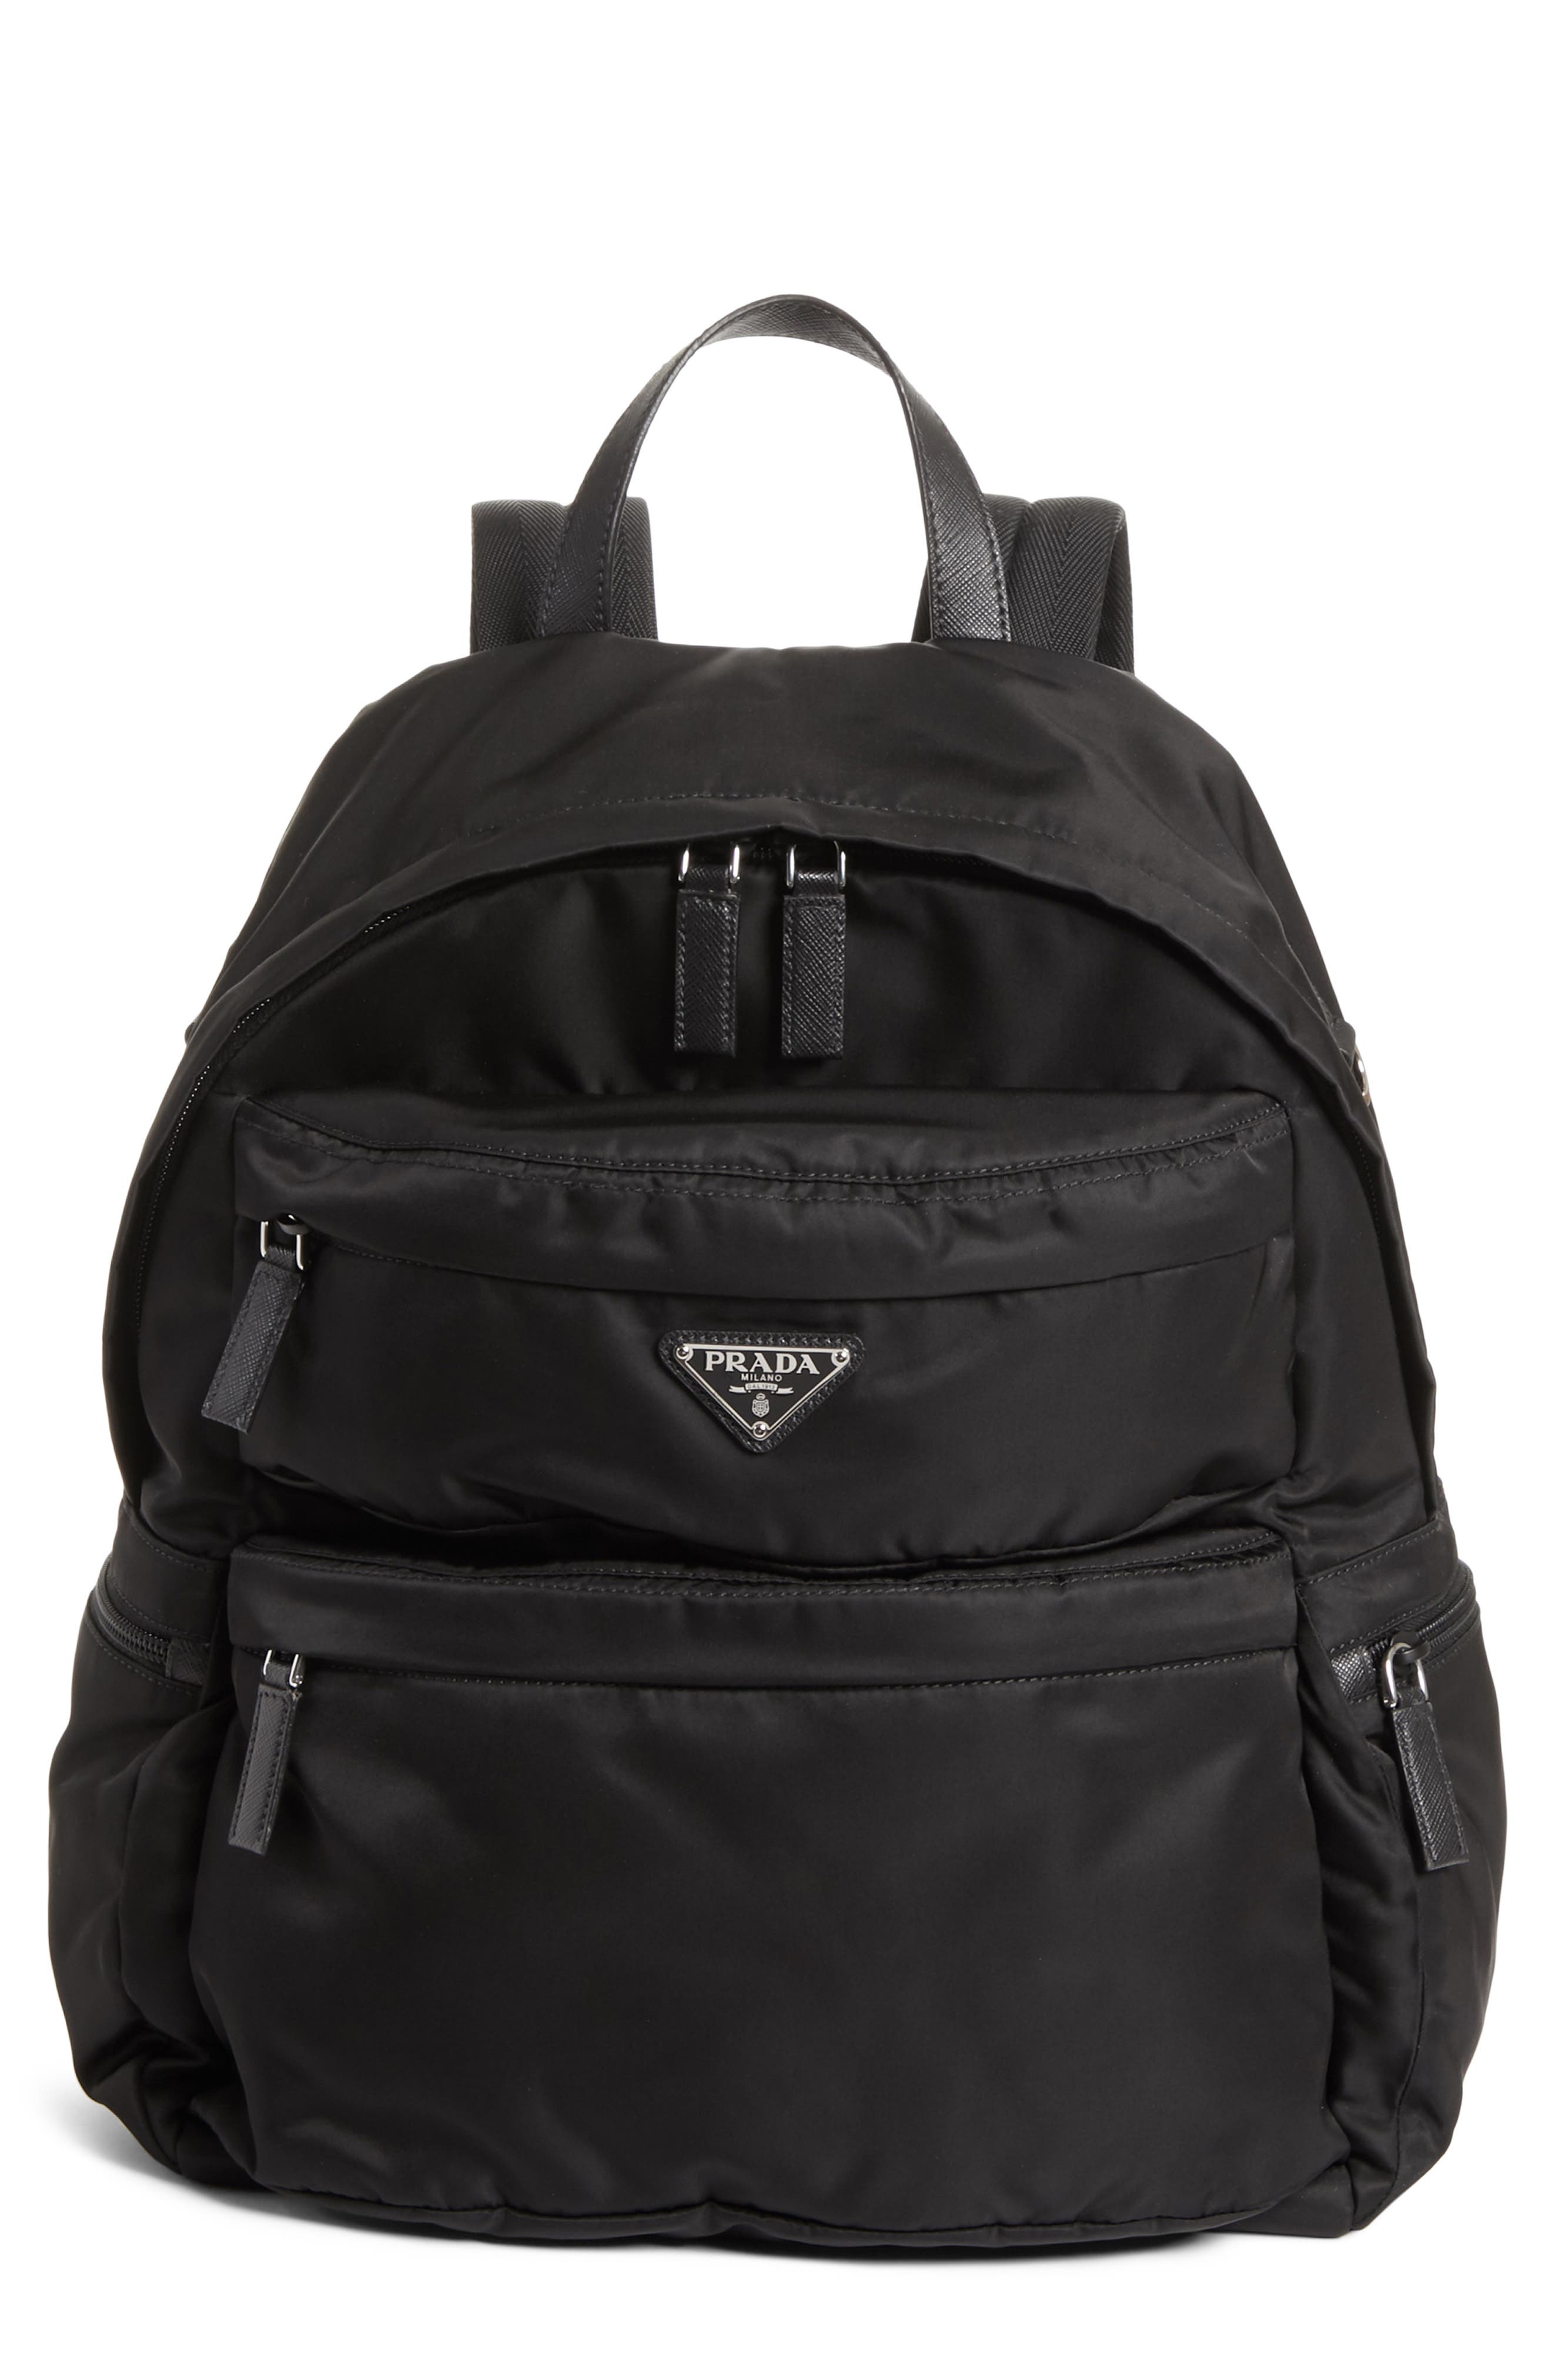 prada men's nylon backpack